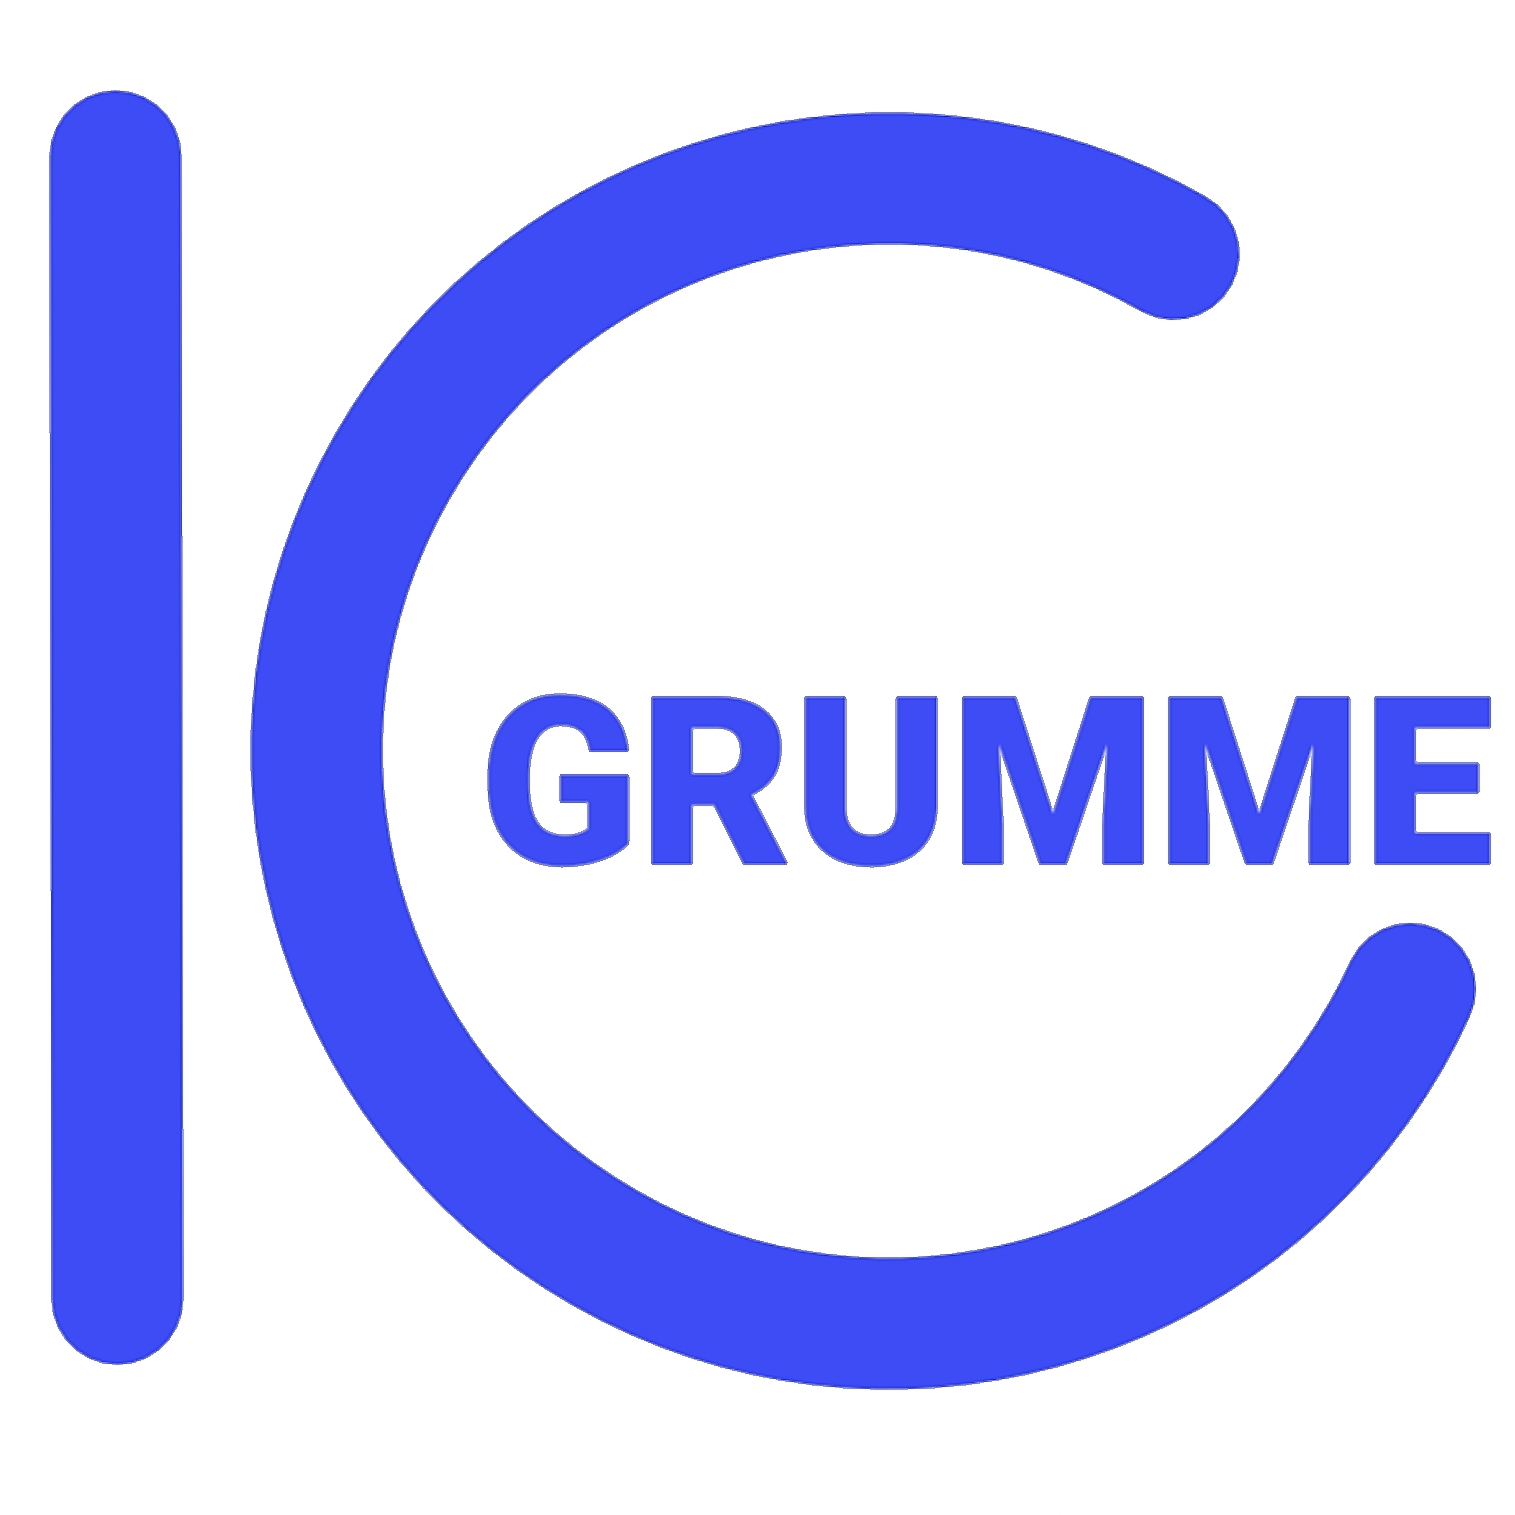 IG-Grumme